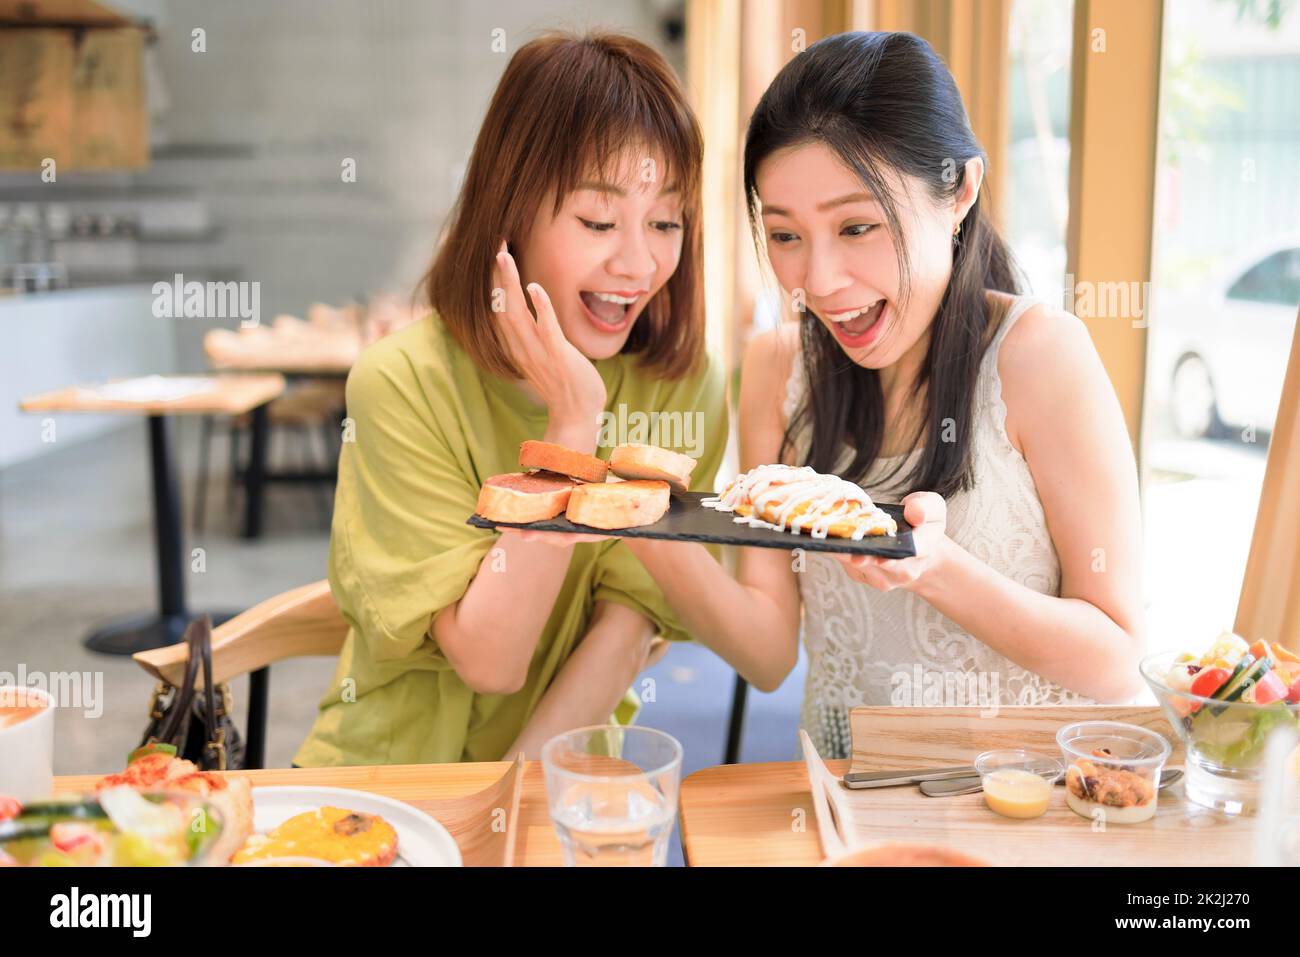 Glückliche Freundinnen, die gemeinsam im Restaurant zu Mittag essen Stockfoto